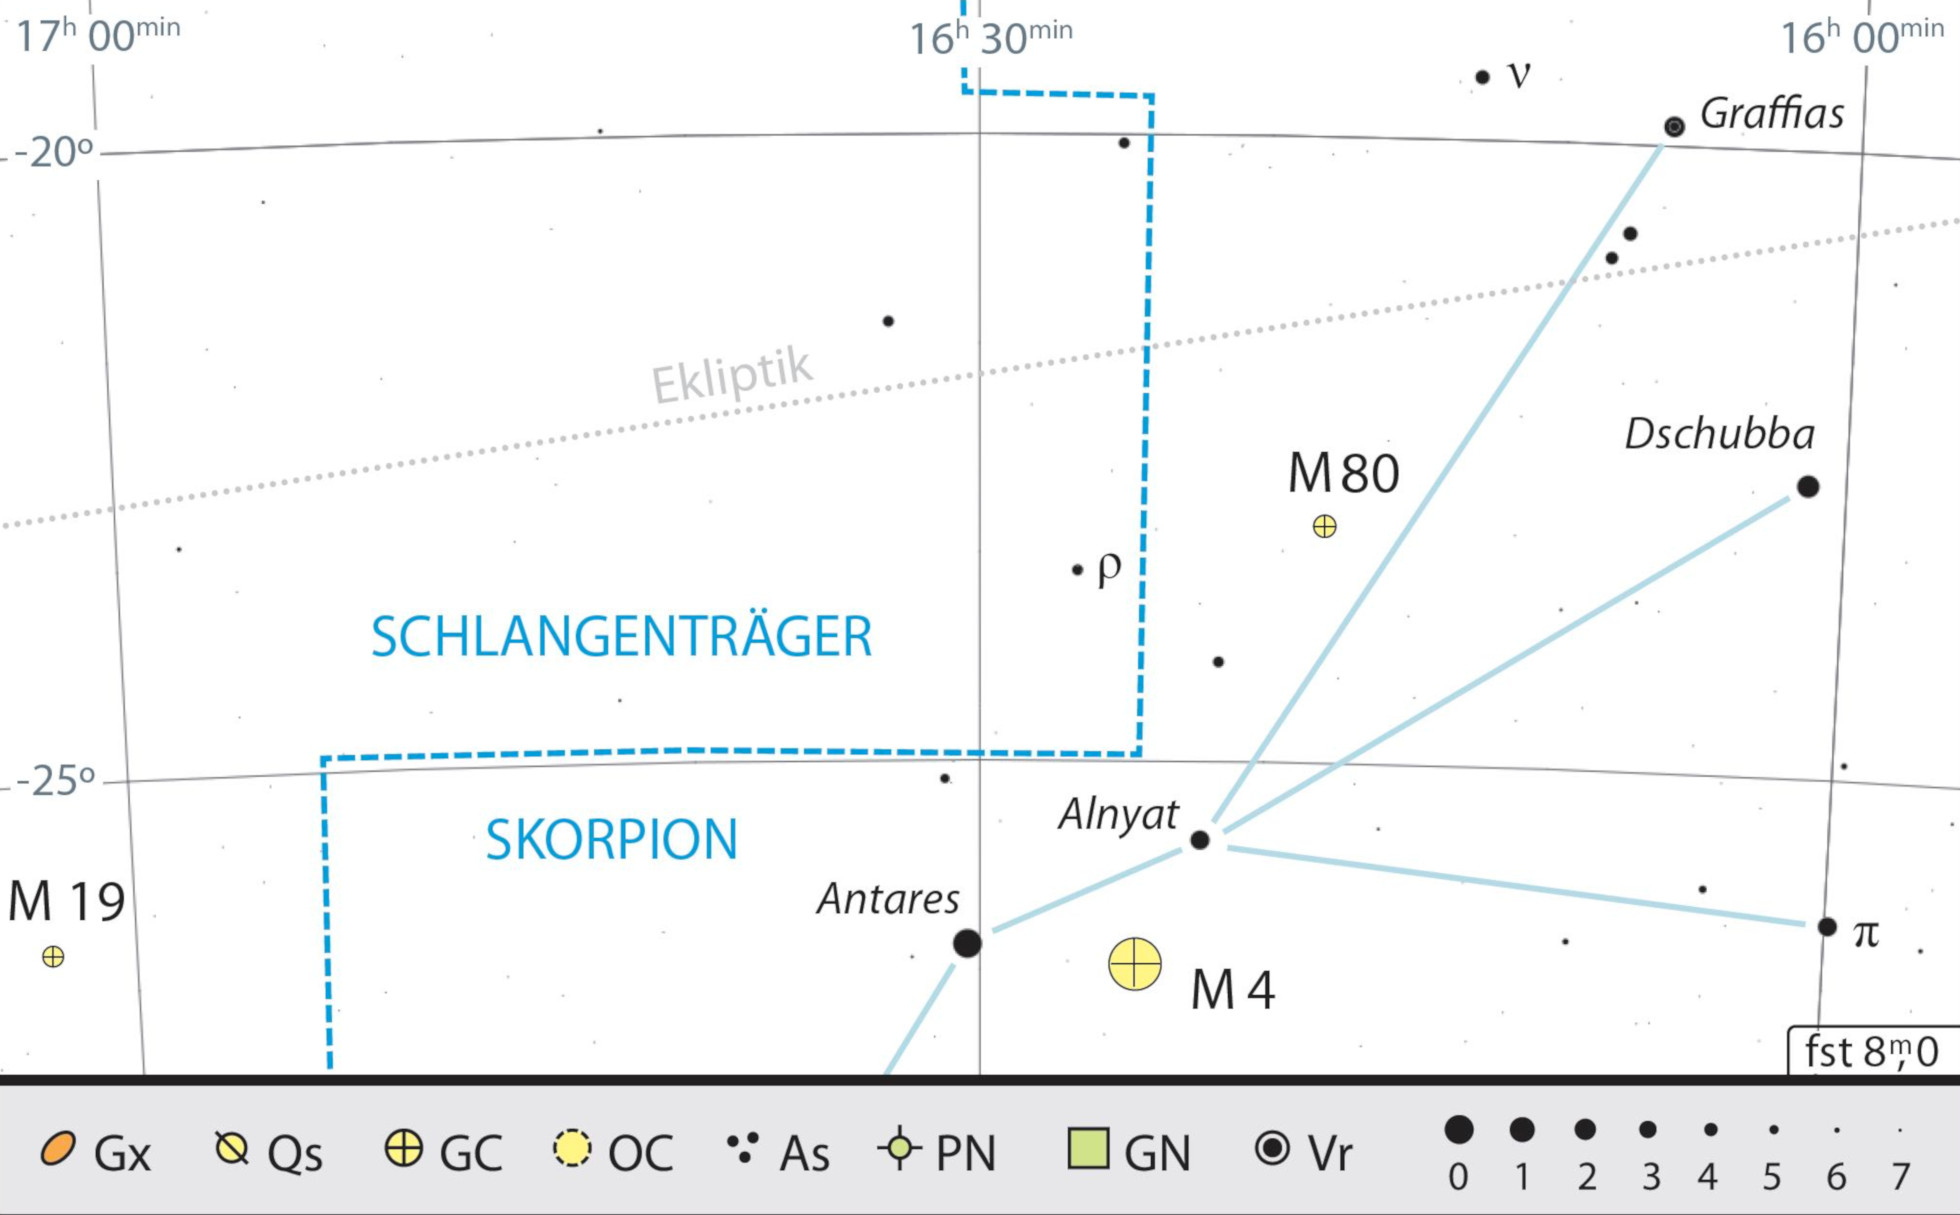 Mapa estelar de ν Scorpii y M4. Kai v. Schauroth